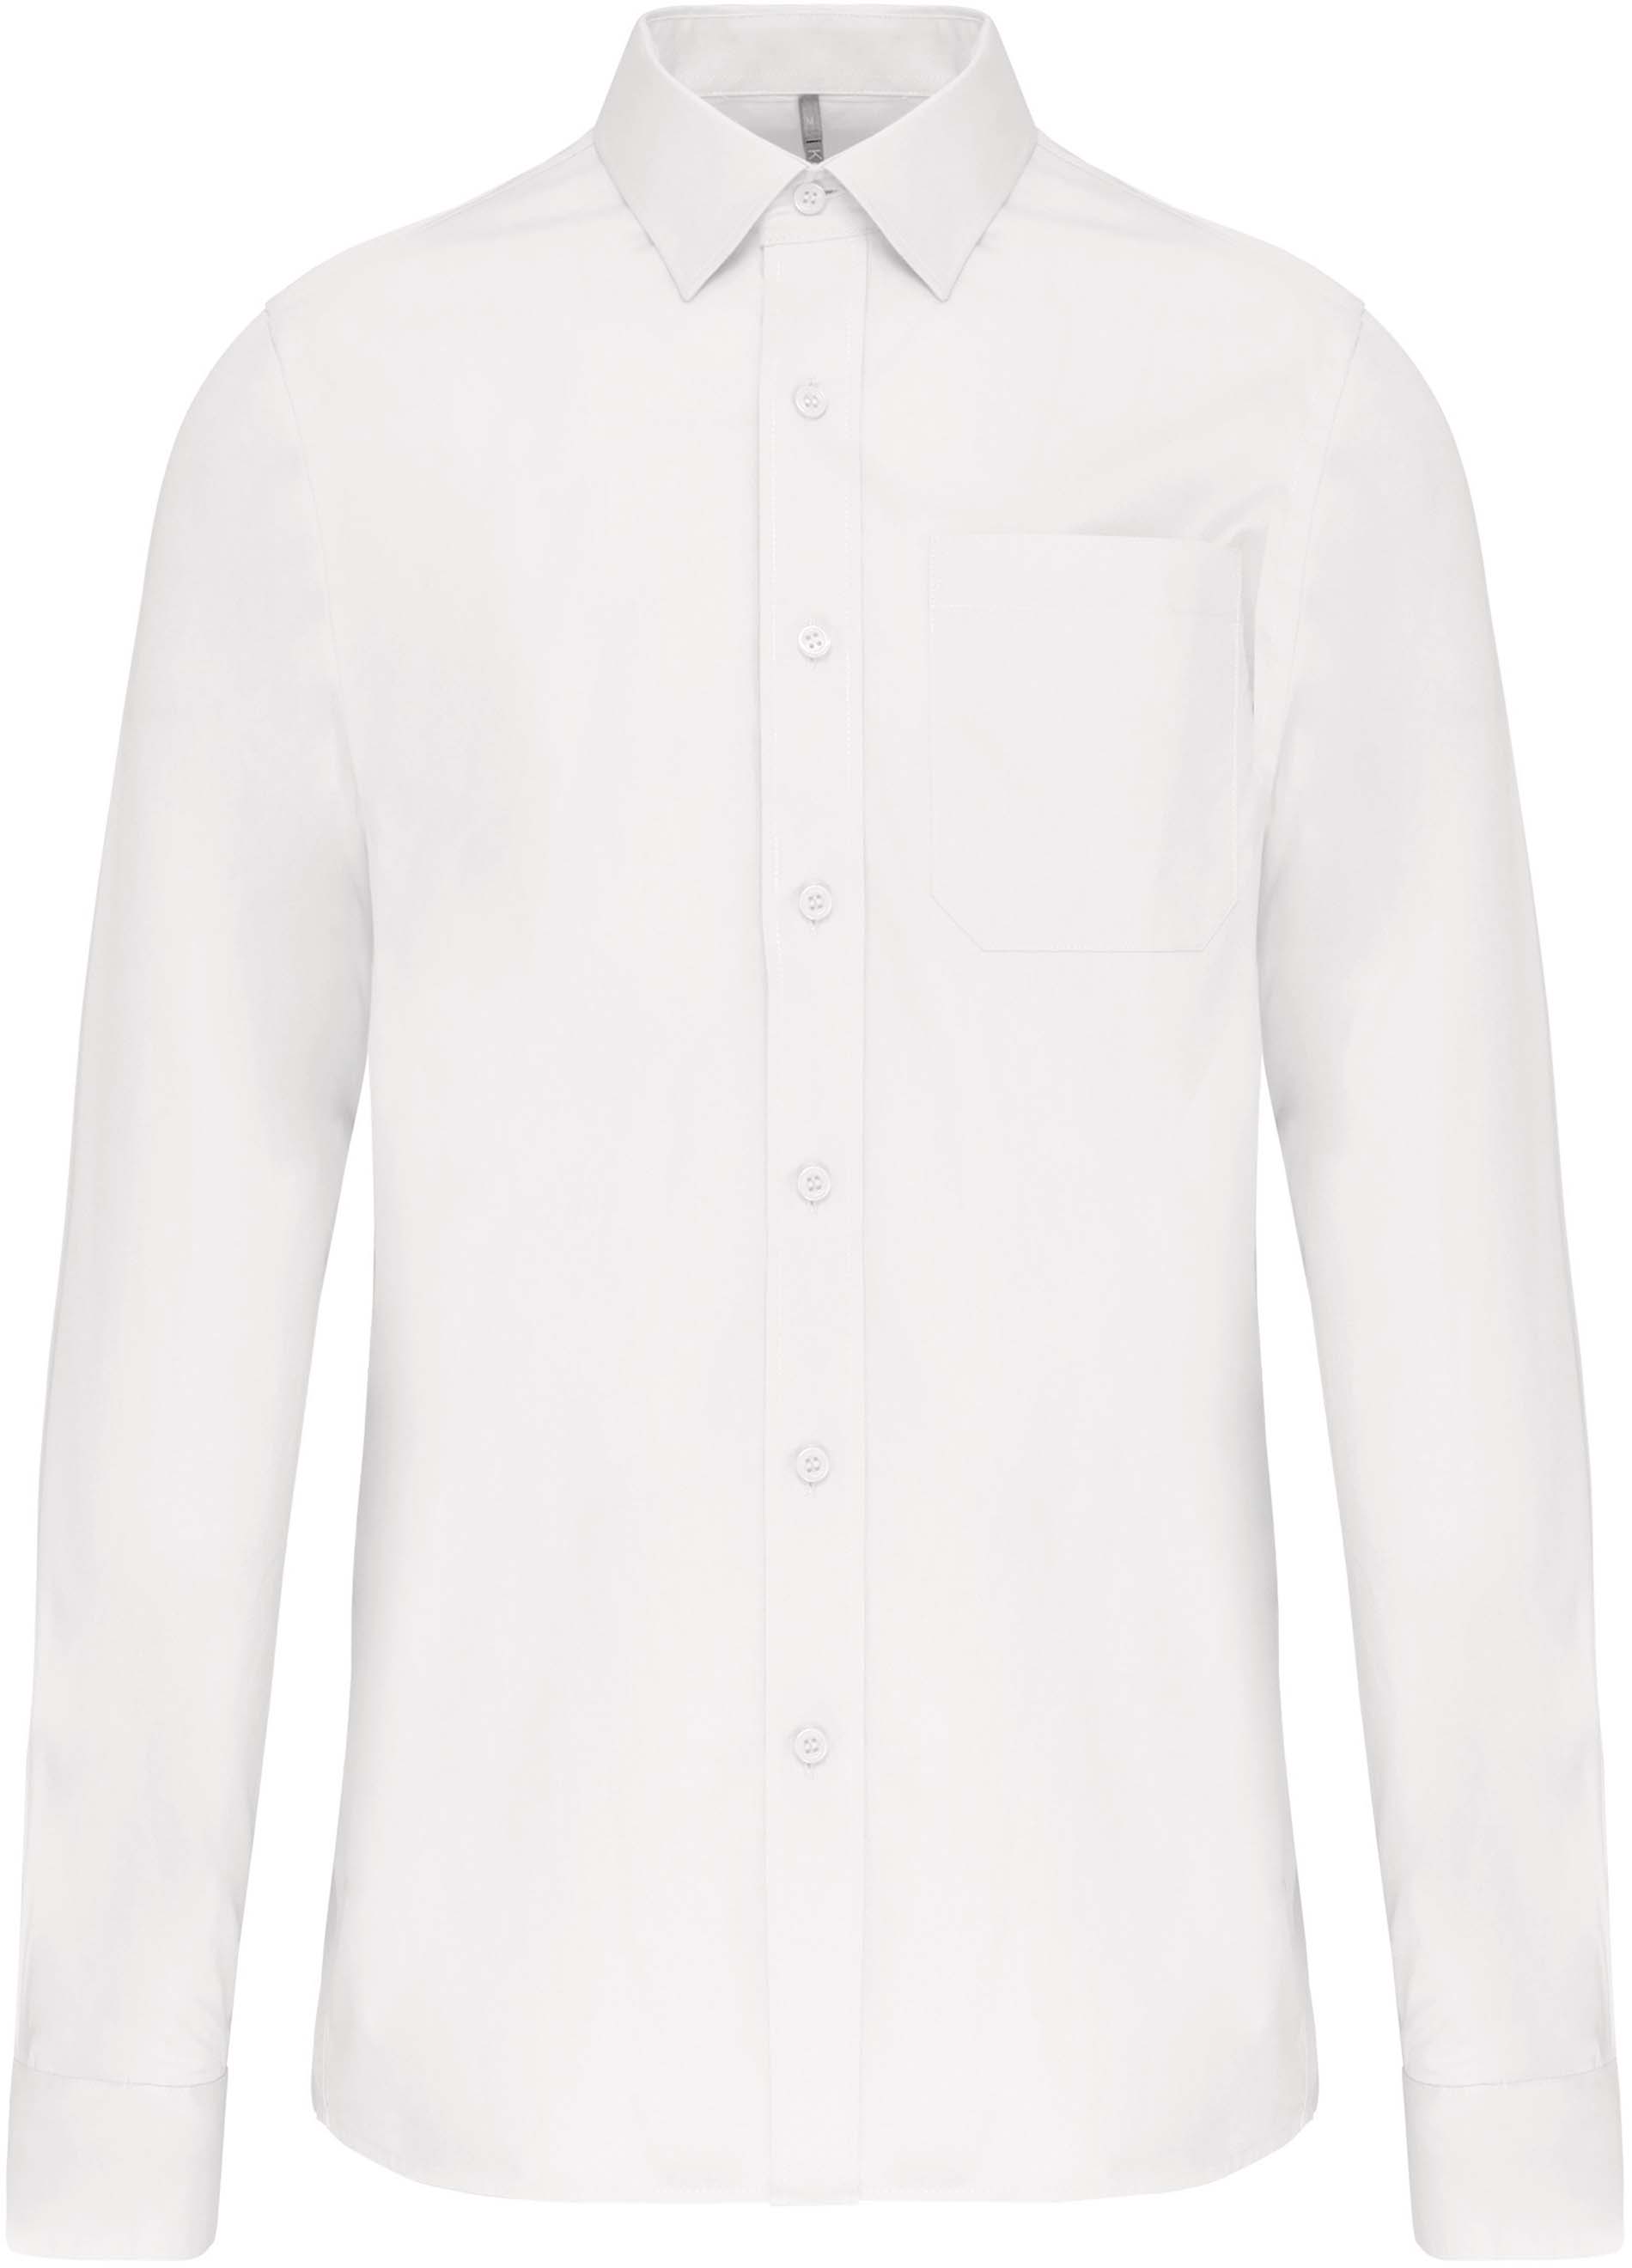 Pánská košile s dlouhým rukávem Velikost: 3XL, Barva: white, Rozměr: 84,50/69